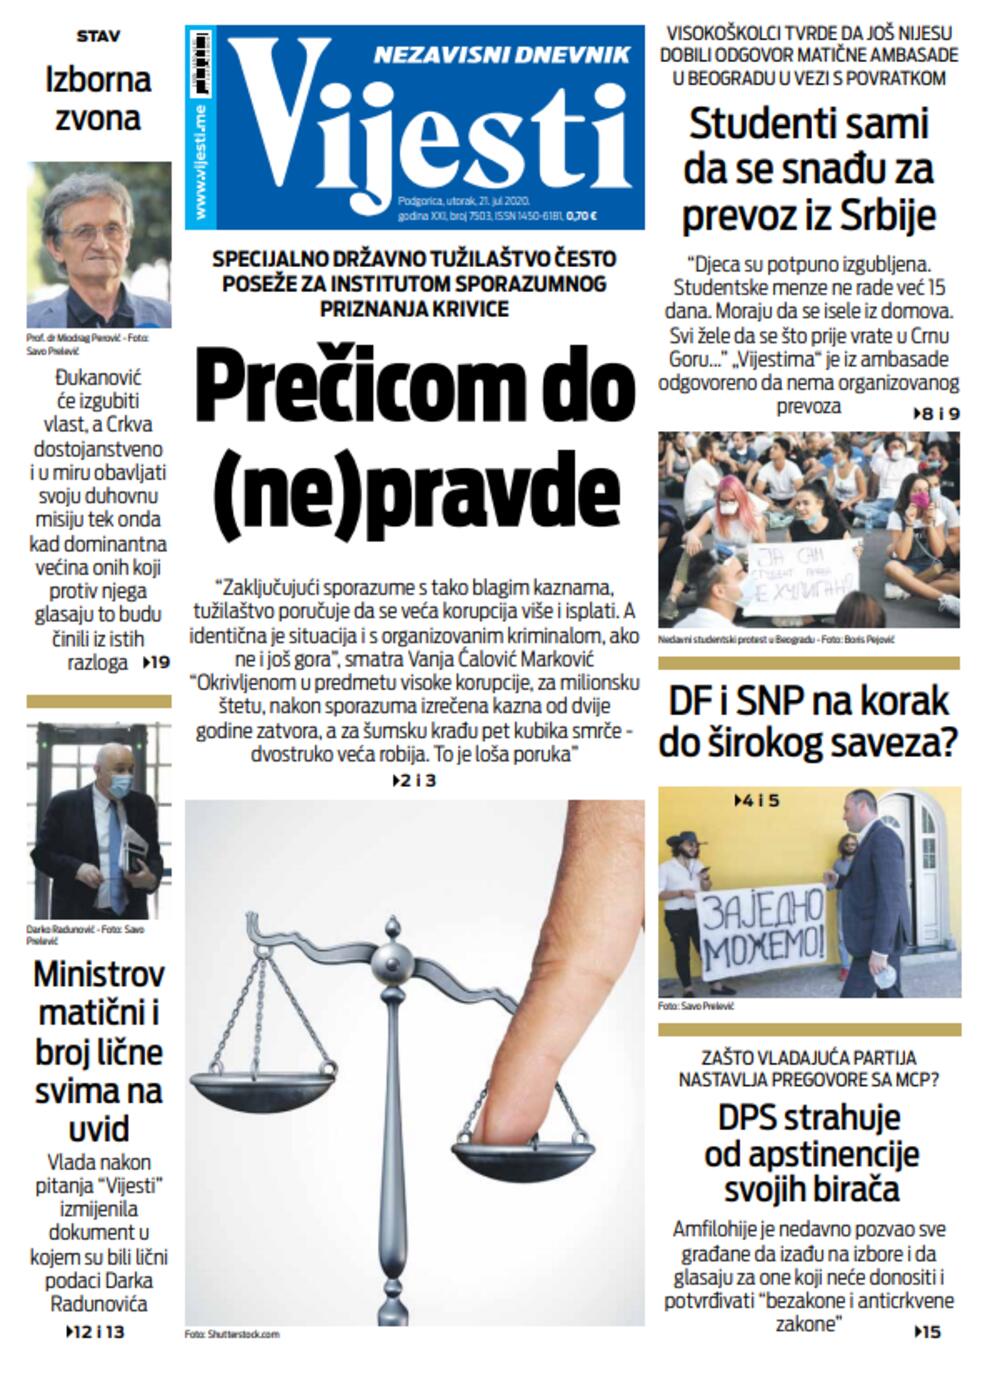 Naslovna strana "Vijesti" 21. 7. 2020., Foto: Vijesti